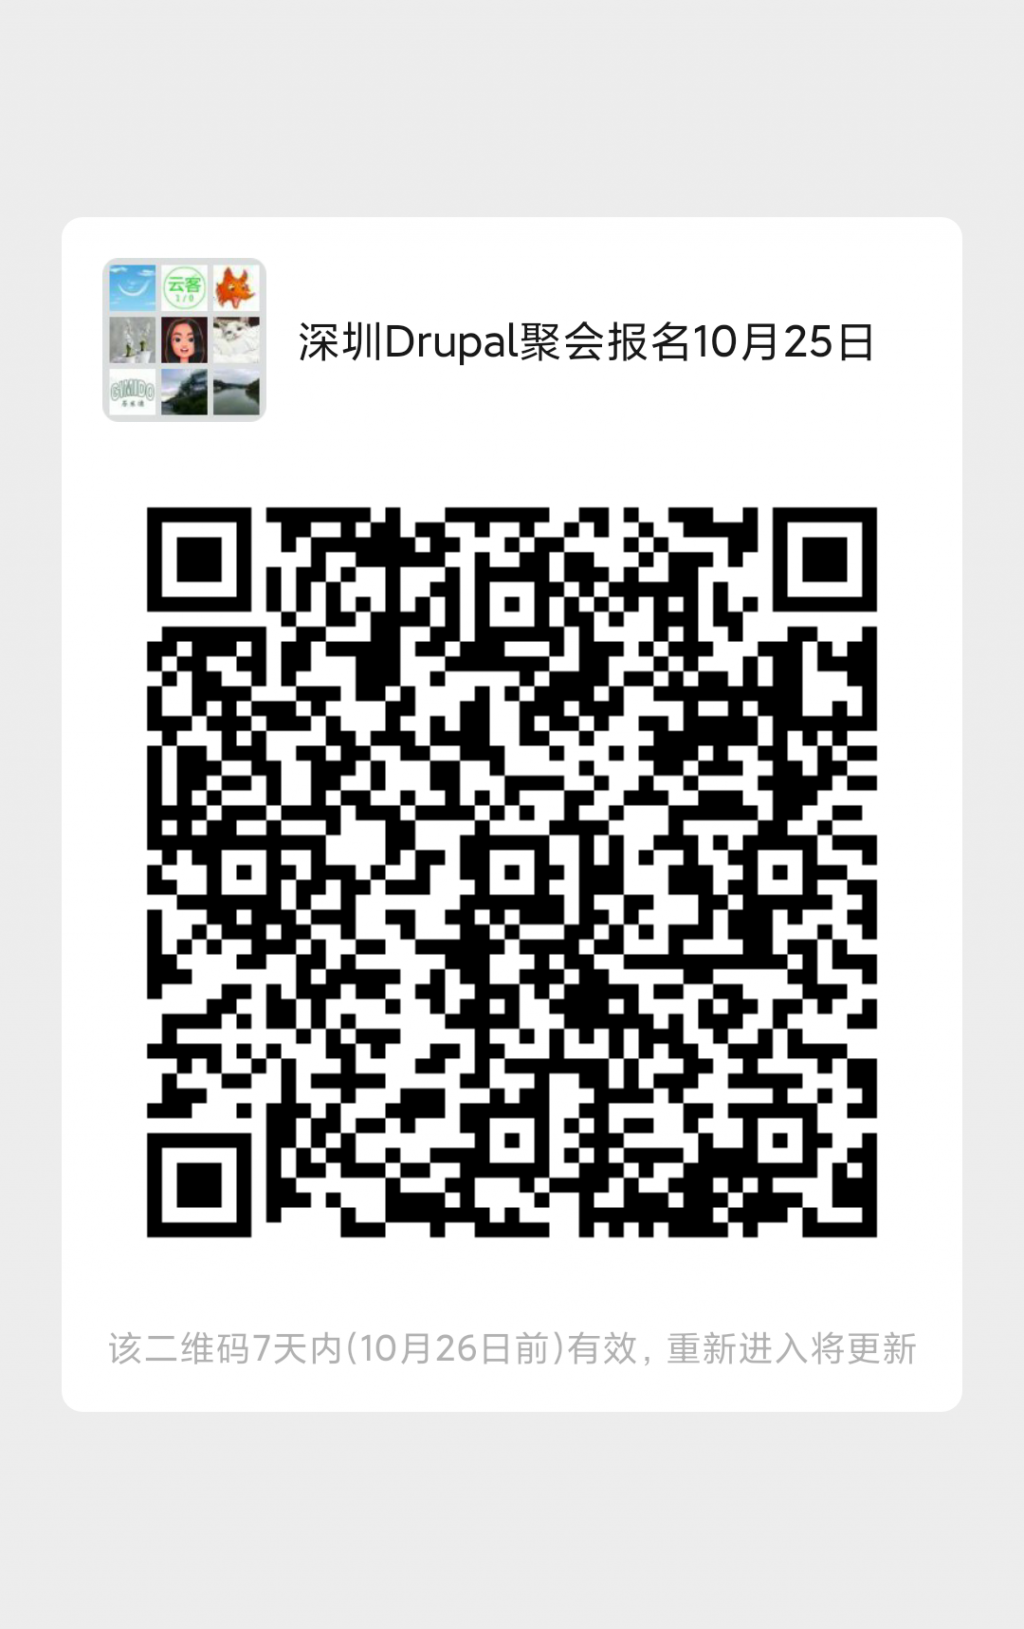 深圳2020年10月25日Drupal聚会微信群